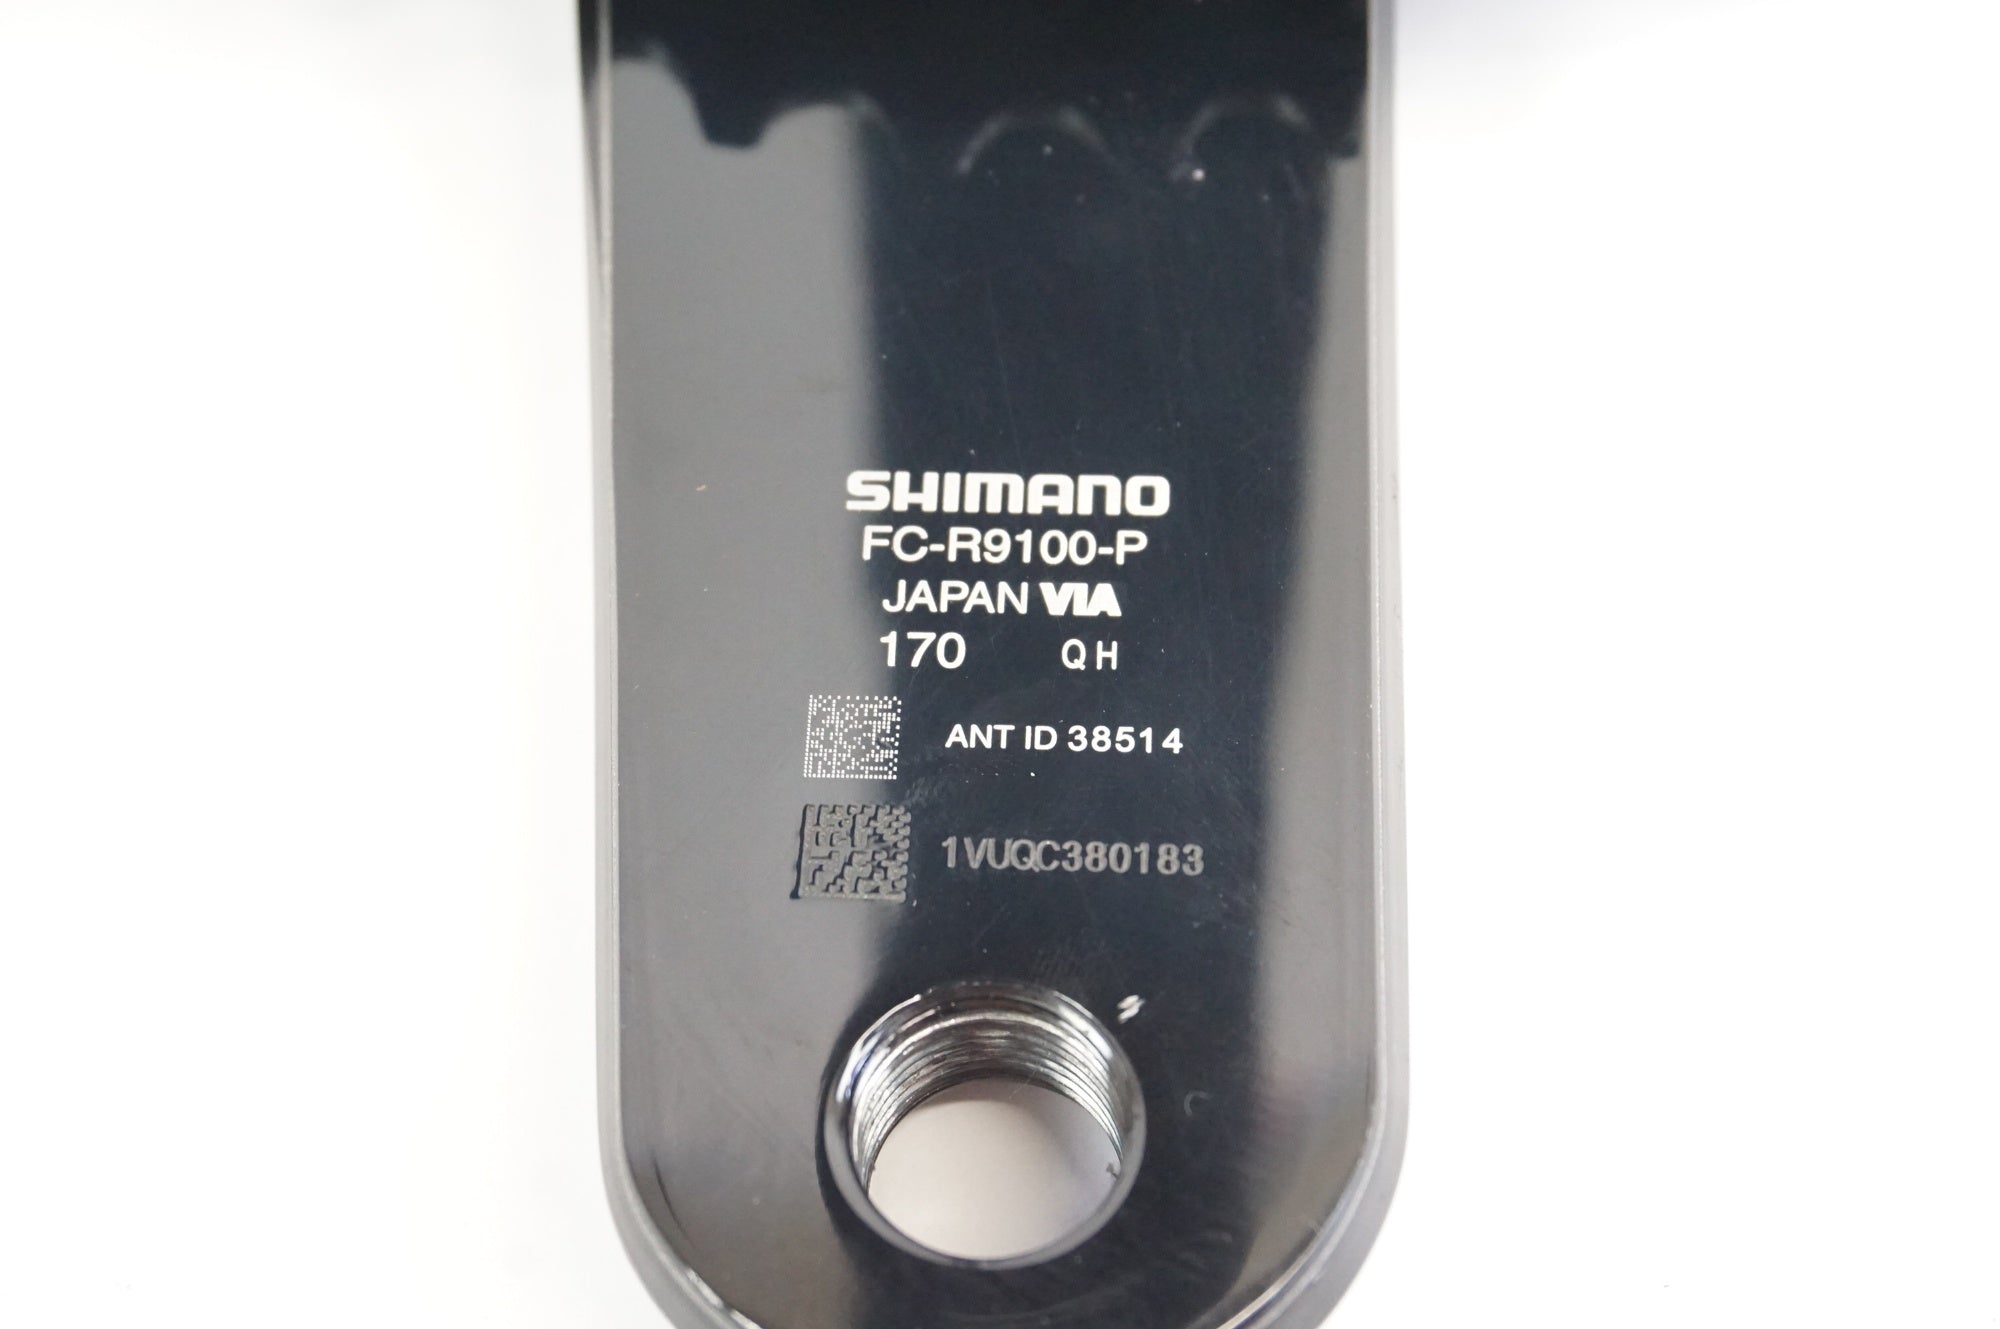 SHIMANO 「シマノ」 DURA-ACE FC-R9100-P パワーメーター付き 52-36T 170mm クランク / 宇都宮店